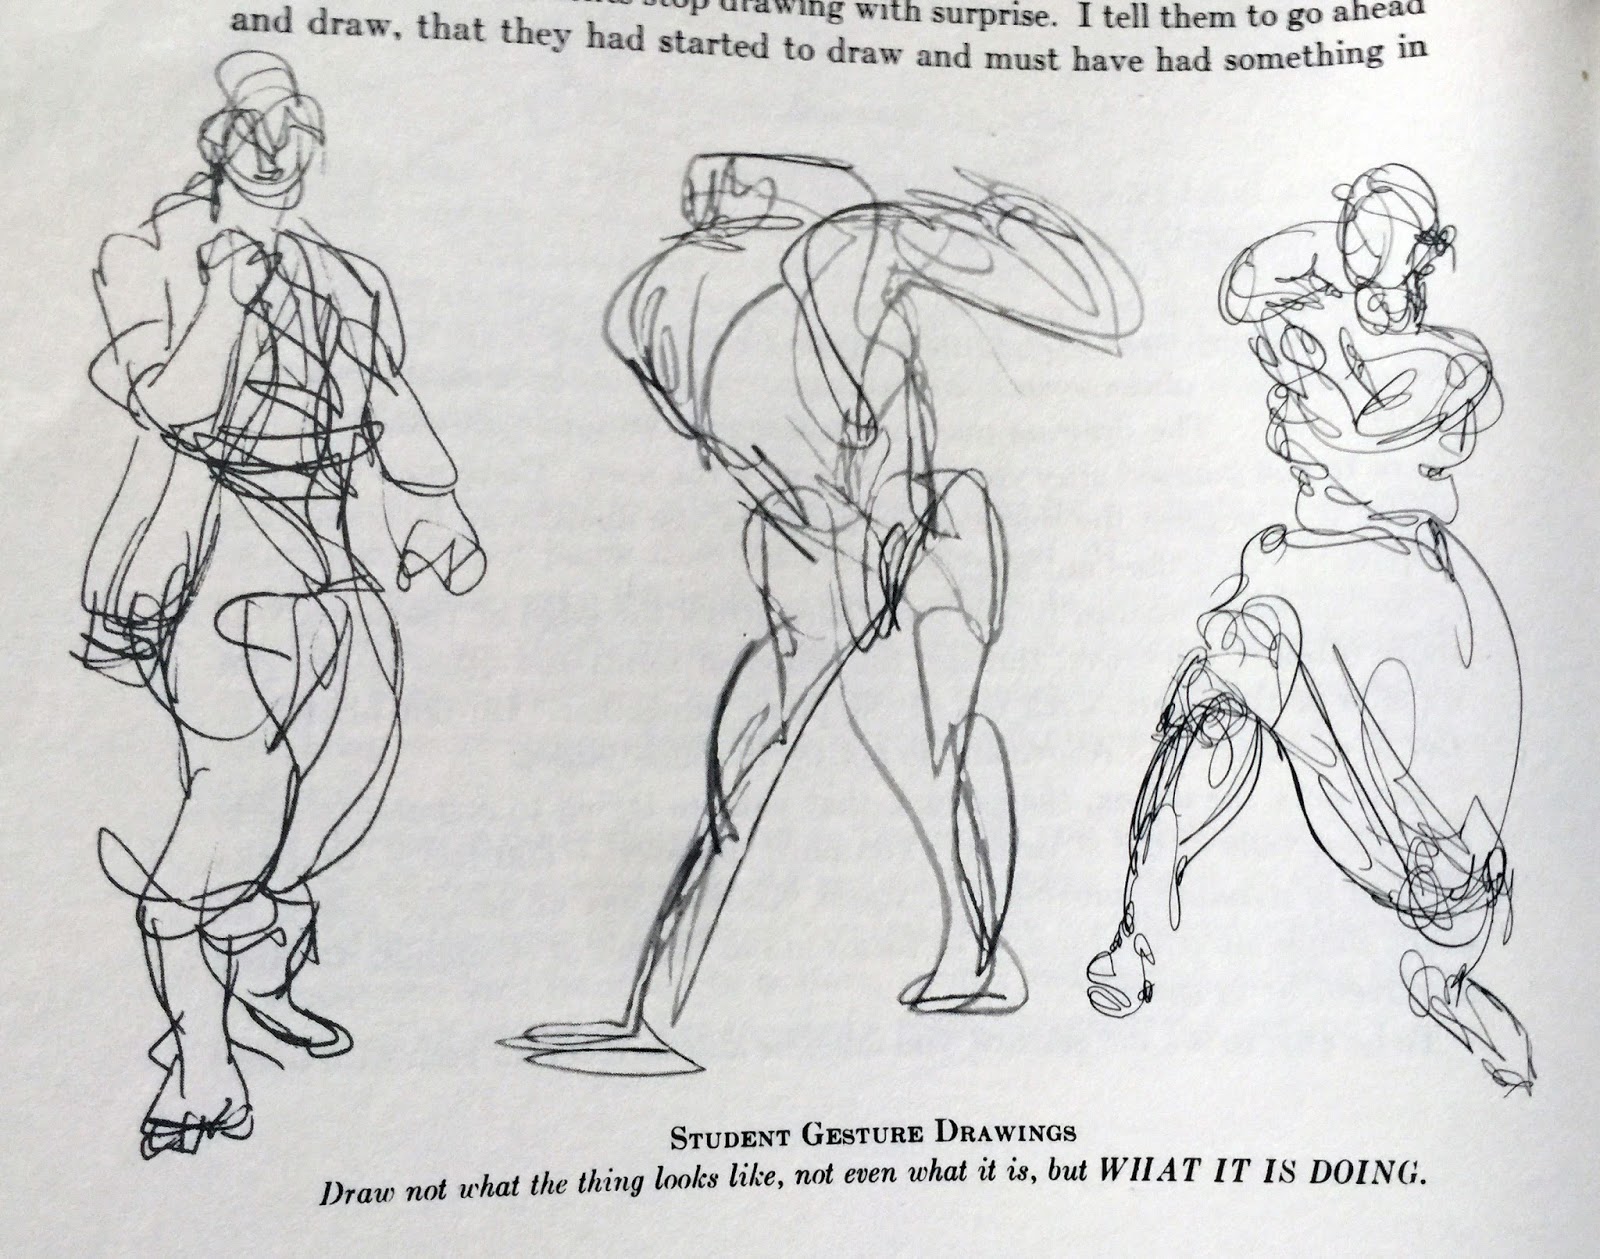 scribble gesture stick figure drawings - Google Search  Figure drawing  poses, Human figure drawing, Figure drawing tutorial